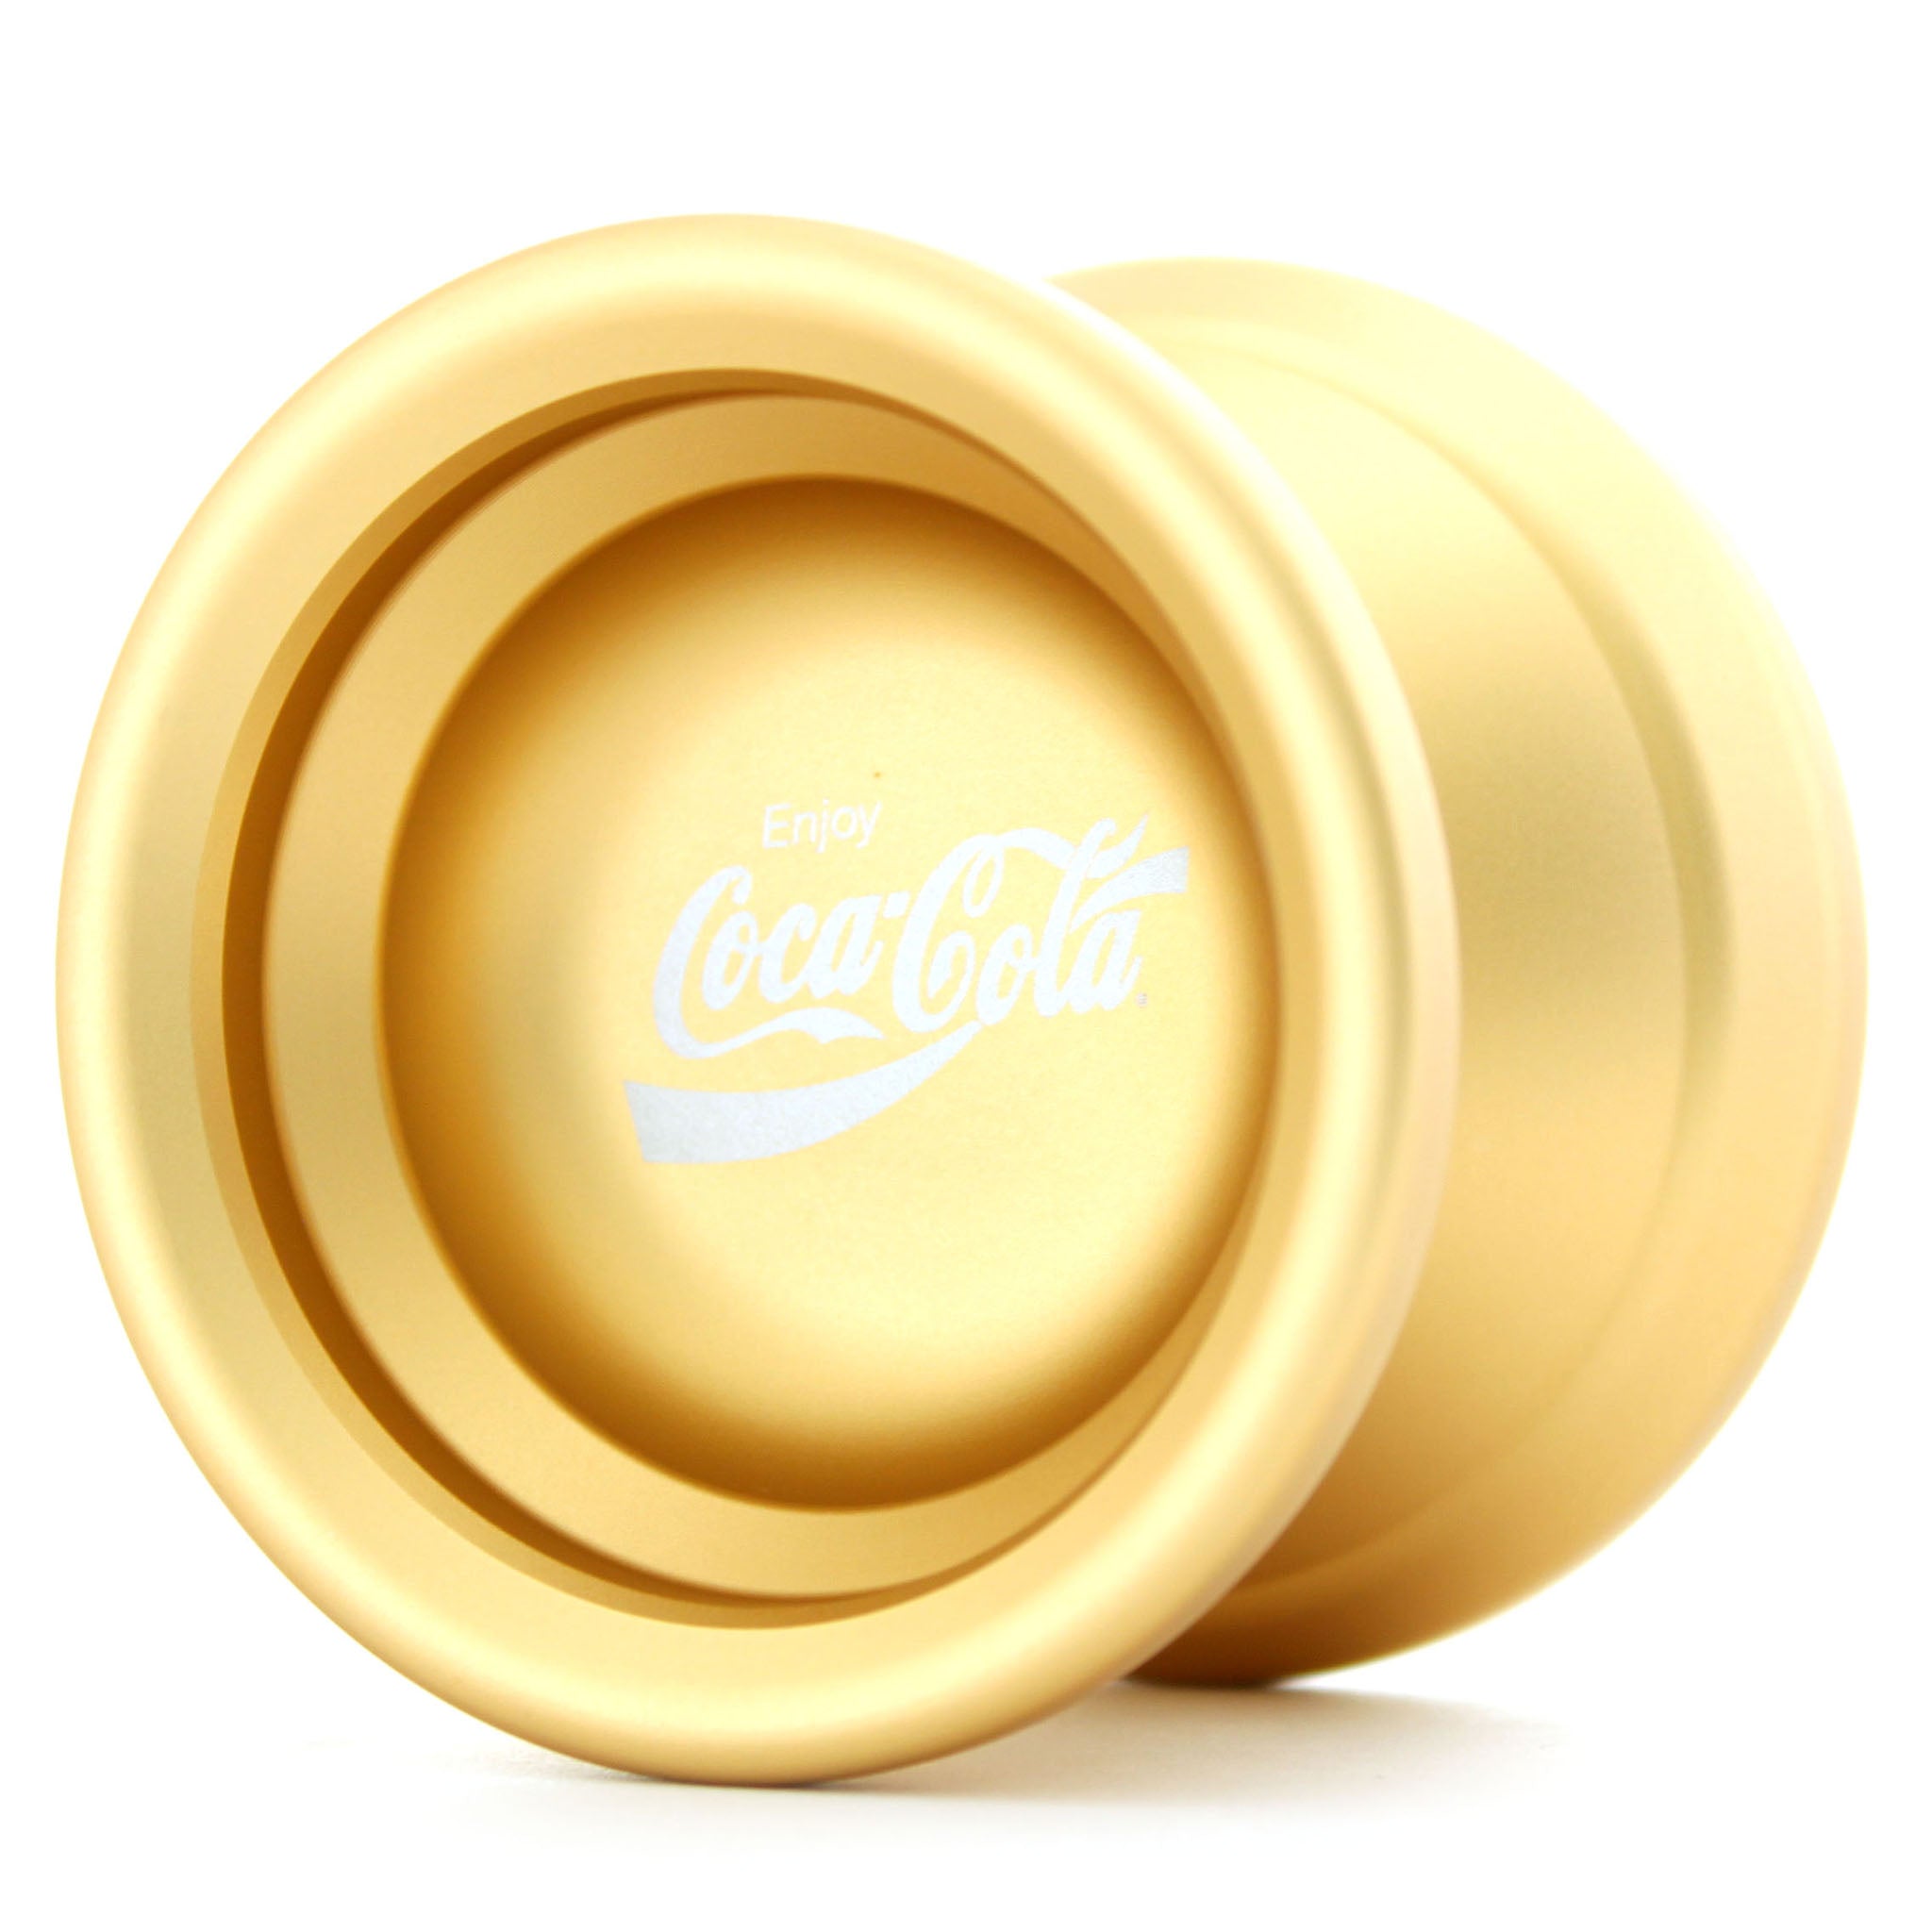 Coca-Cola Metal Yo-Yo - Freshthings / YO-YO STORE REWIND WORLDWIDE